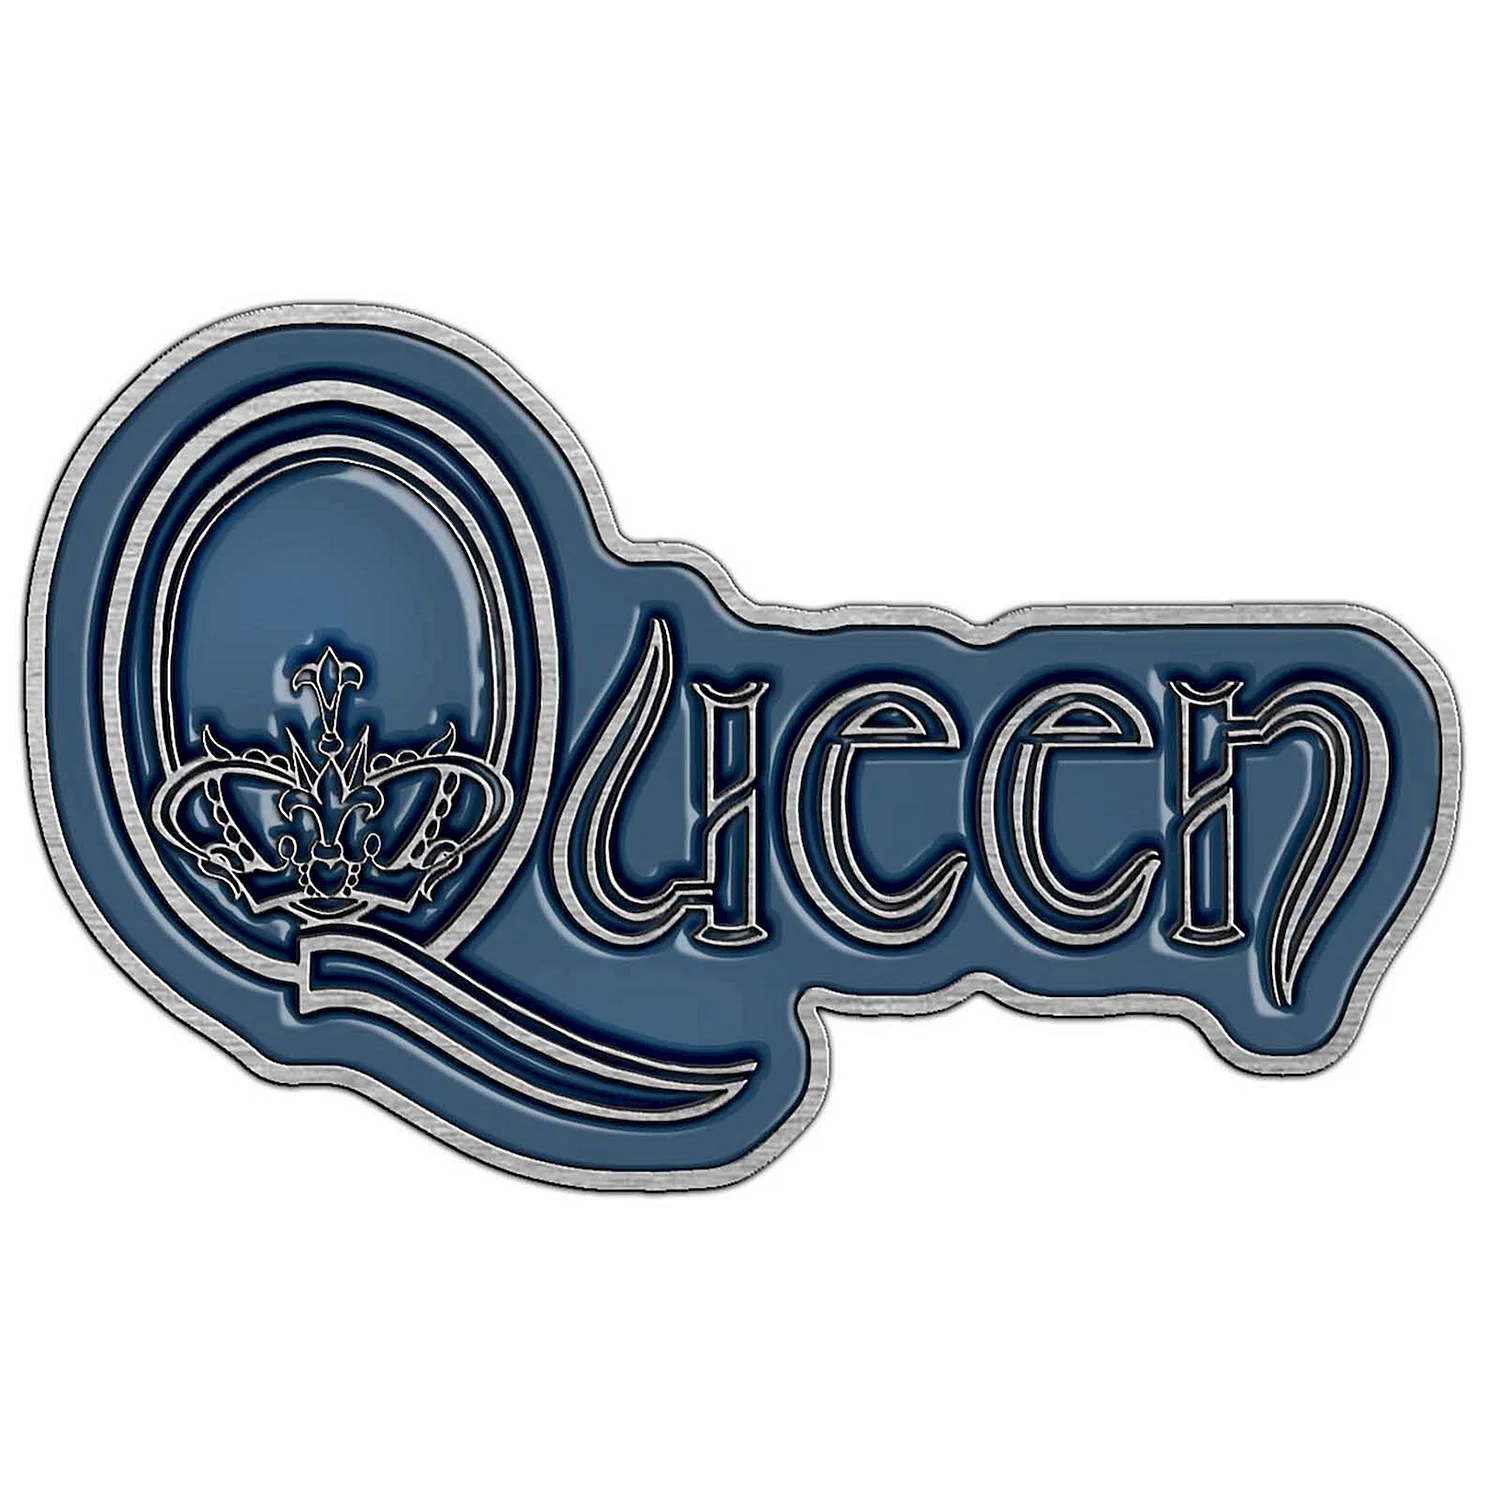 Queen надпись группы